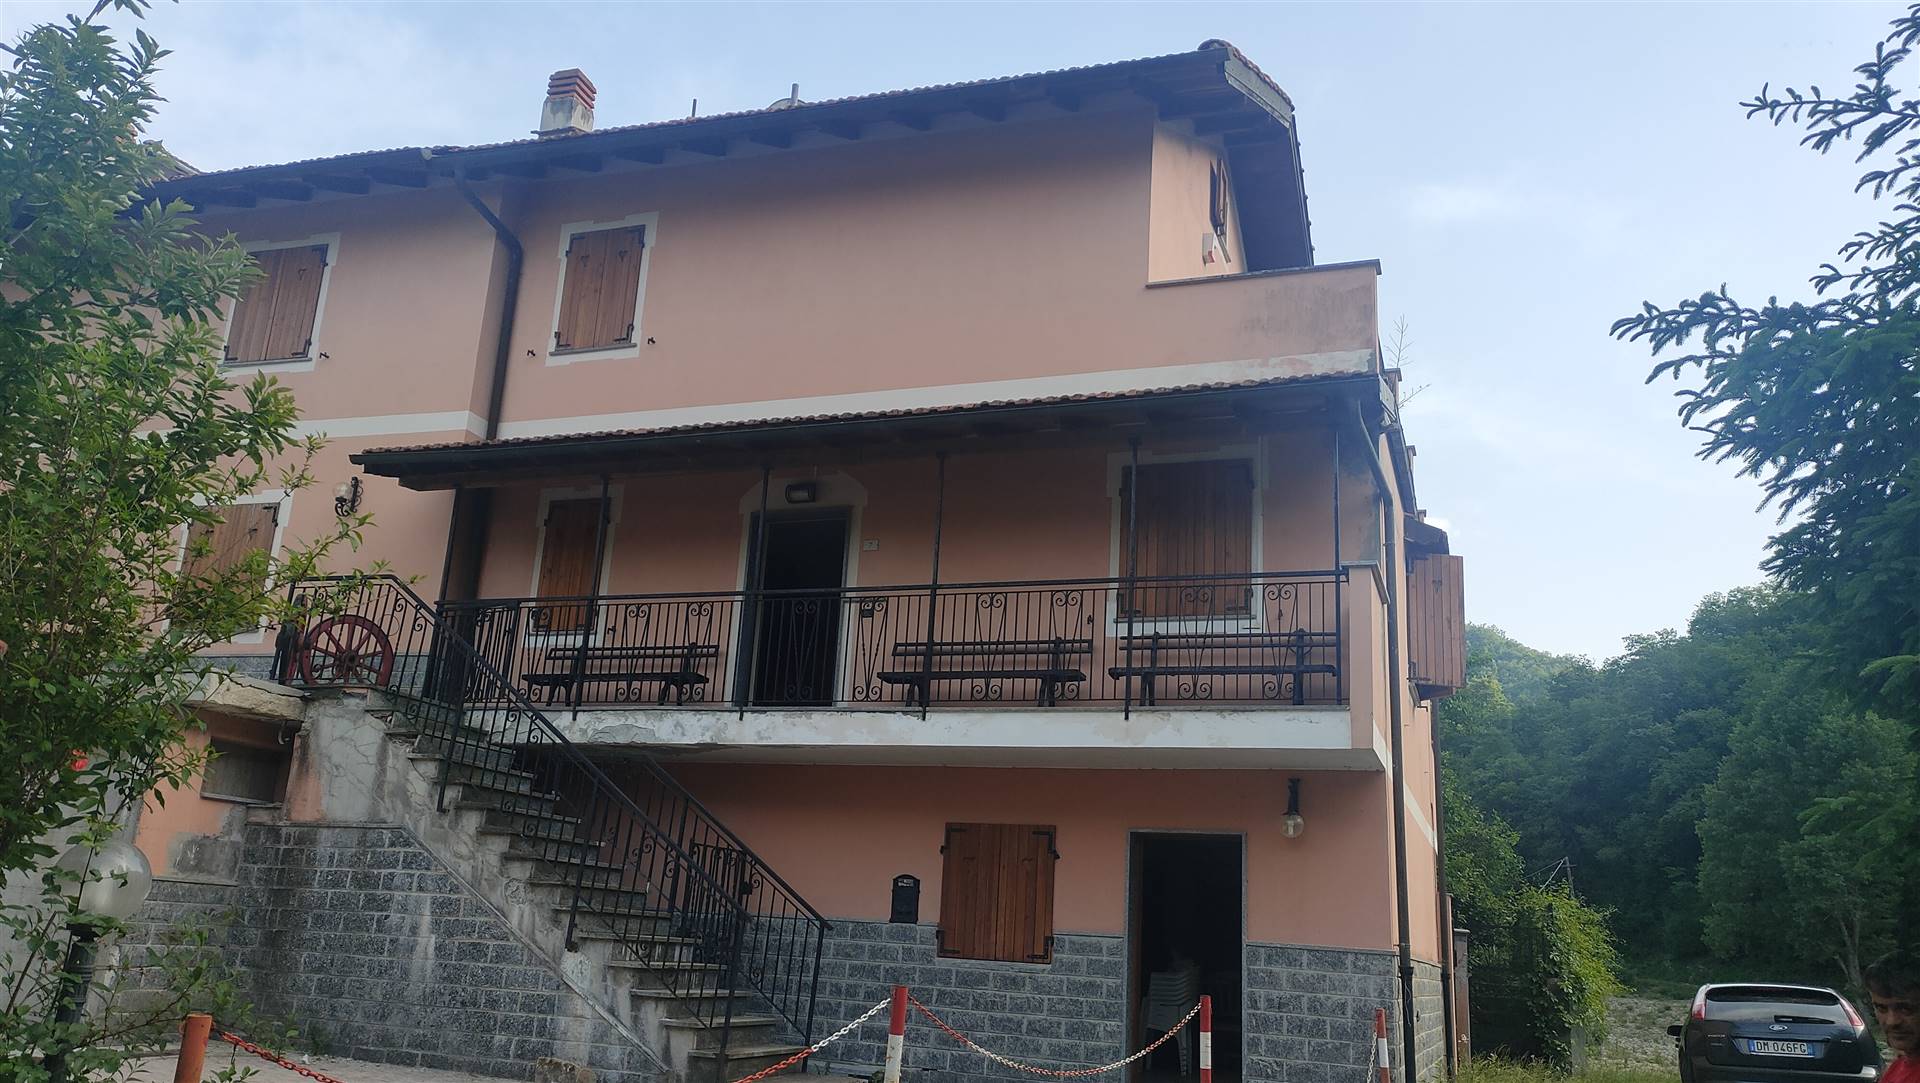 Casa singola in ottime condizioni a Mongiardino Ligure